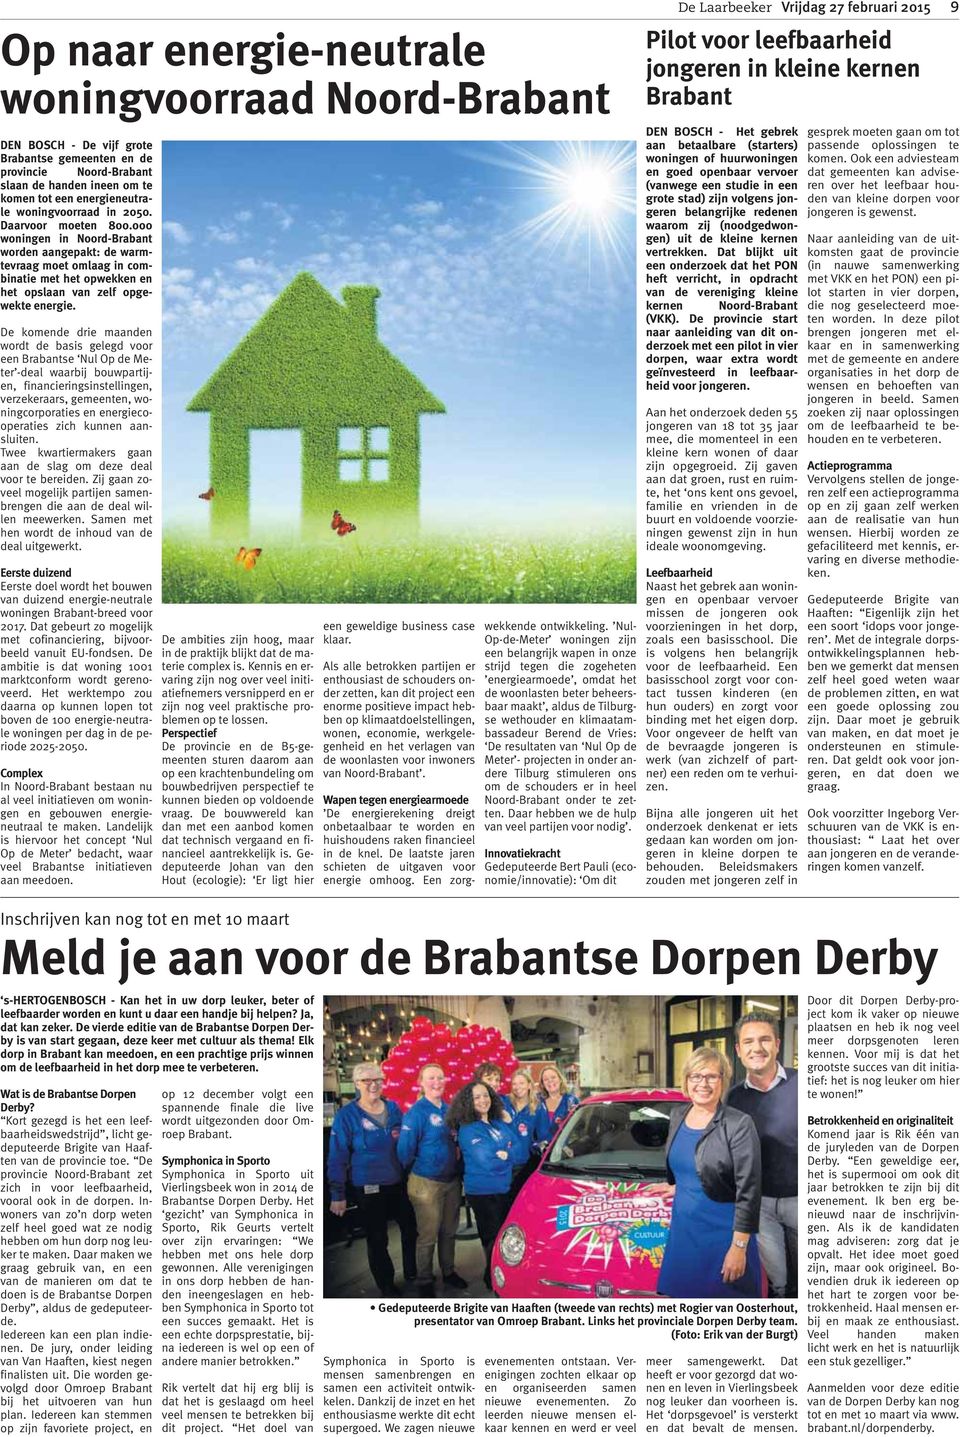 De komende drie maanden wordt de basis gelegd voor een Brabantse Nul Op de Meter -deal waarbij bouwpartijen, financieringsinstellingen, verzekeraars, gemeenten, woningcorporaties en